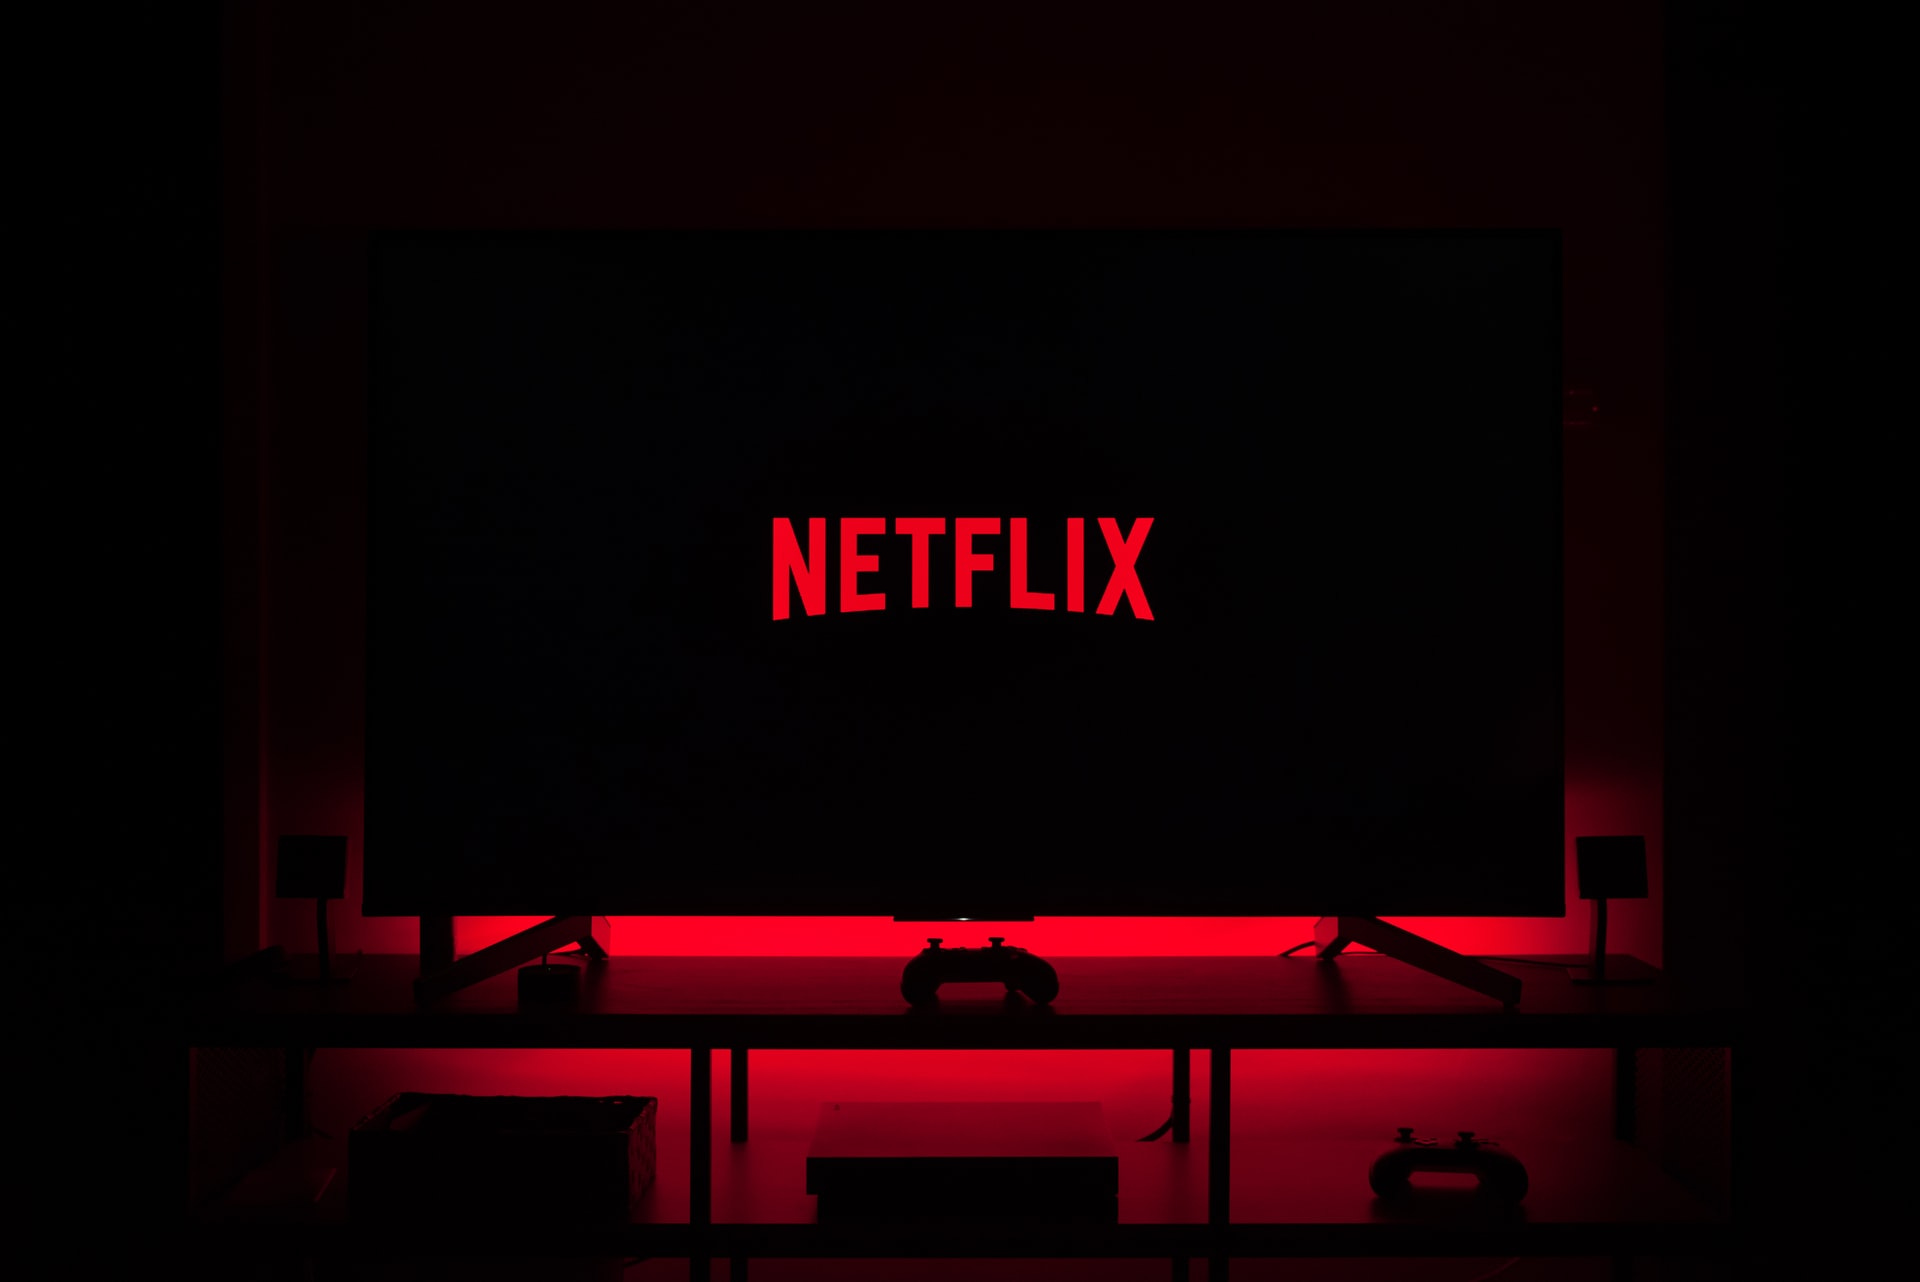 Netflix anuncia cobrança de taxa de compartilhamento de senhas no